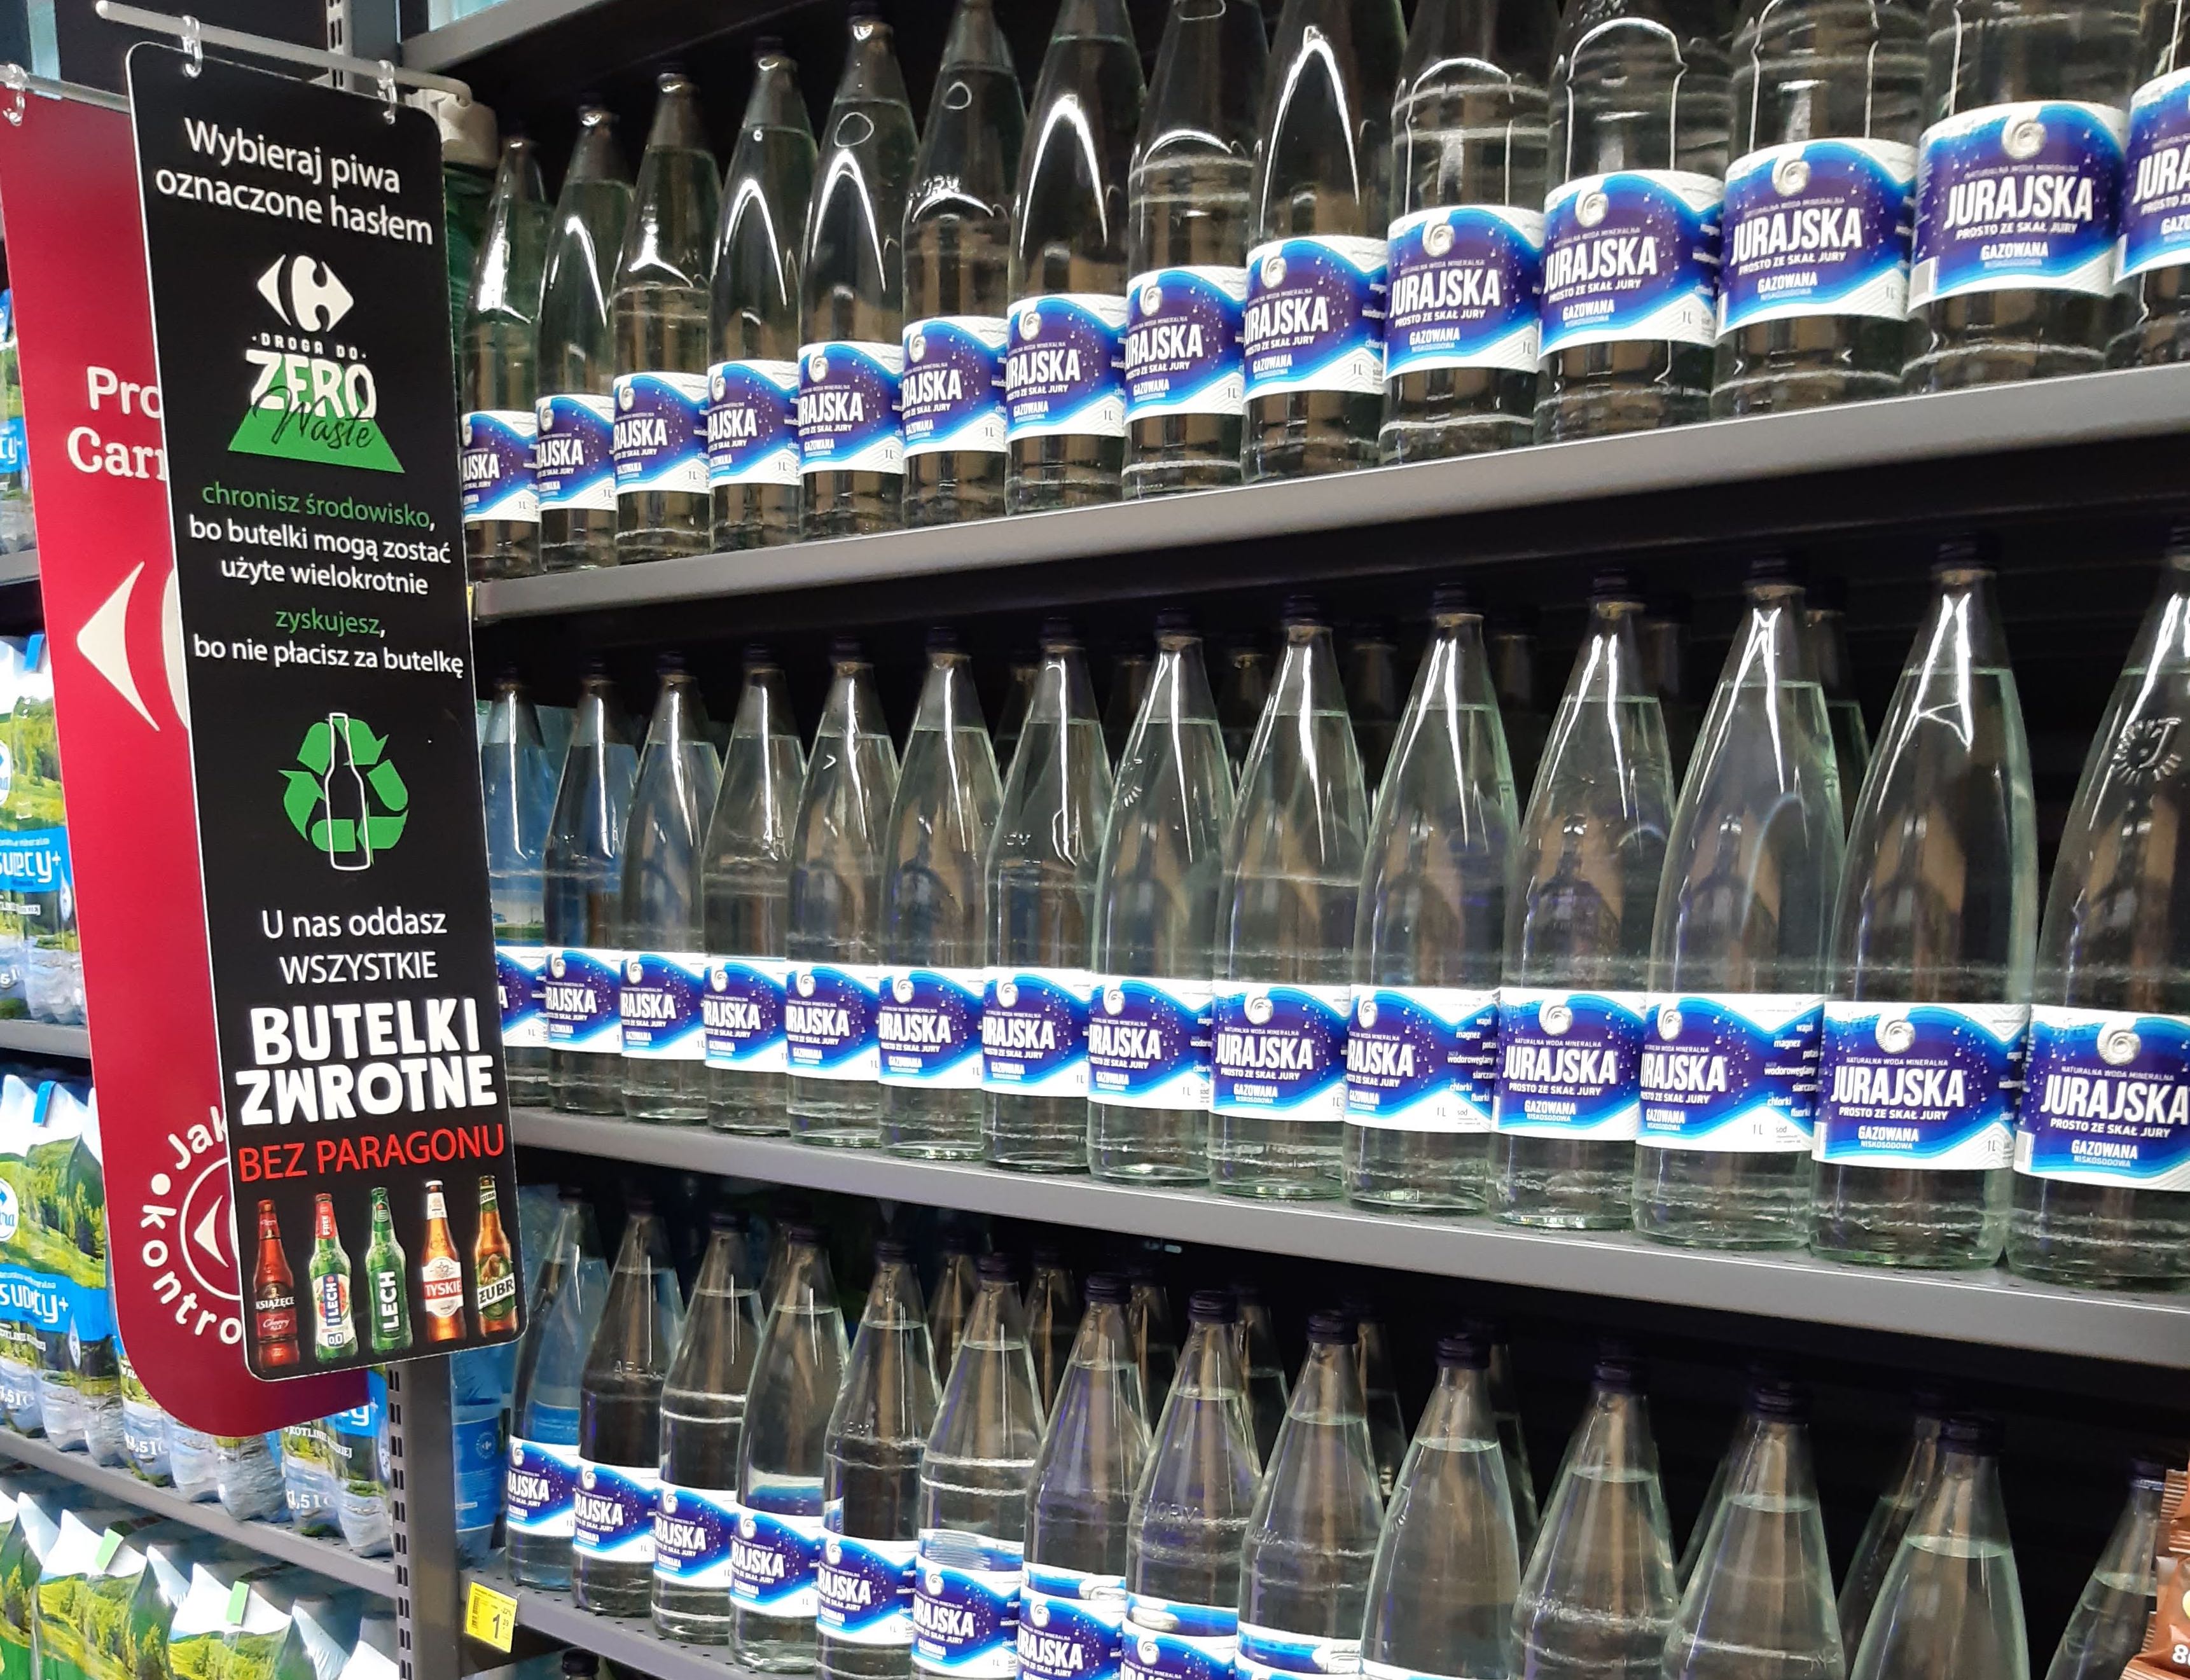 Carrefour sprzedaje wodę w szklanych butelkach zwrotnych